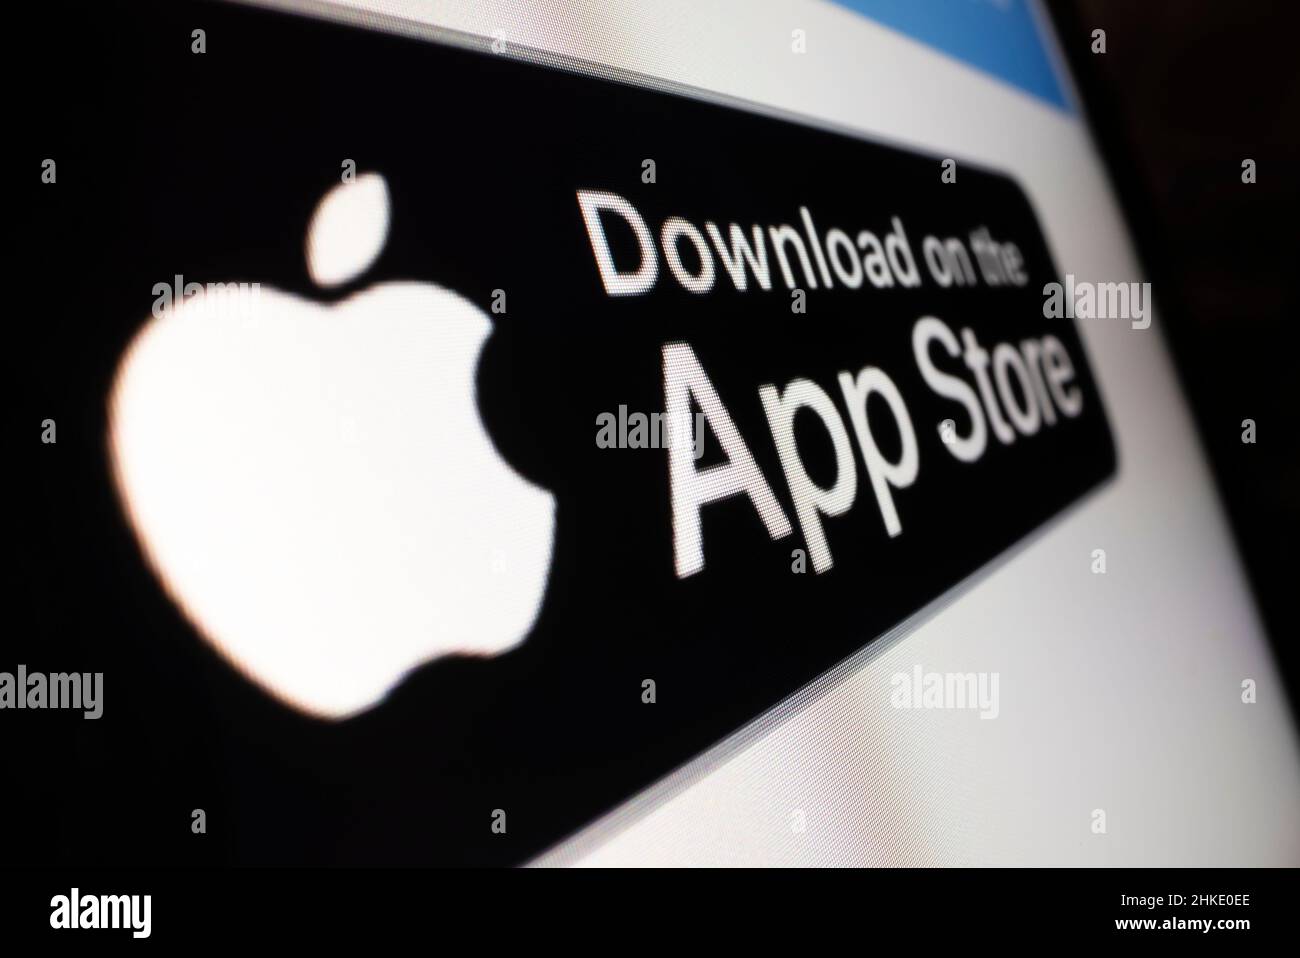 Melbourne, Australia - 4 de febrero de 2022: Vista de primer plano de la insignia Descargar en App Store en un sitio web, grabada con lente de sonda macro Foto de stock